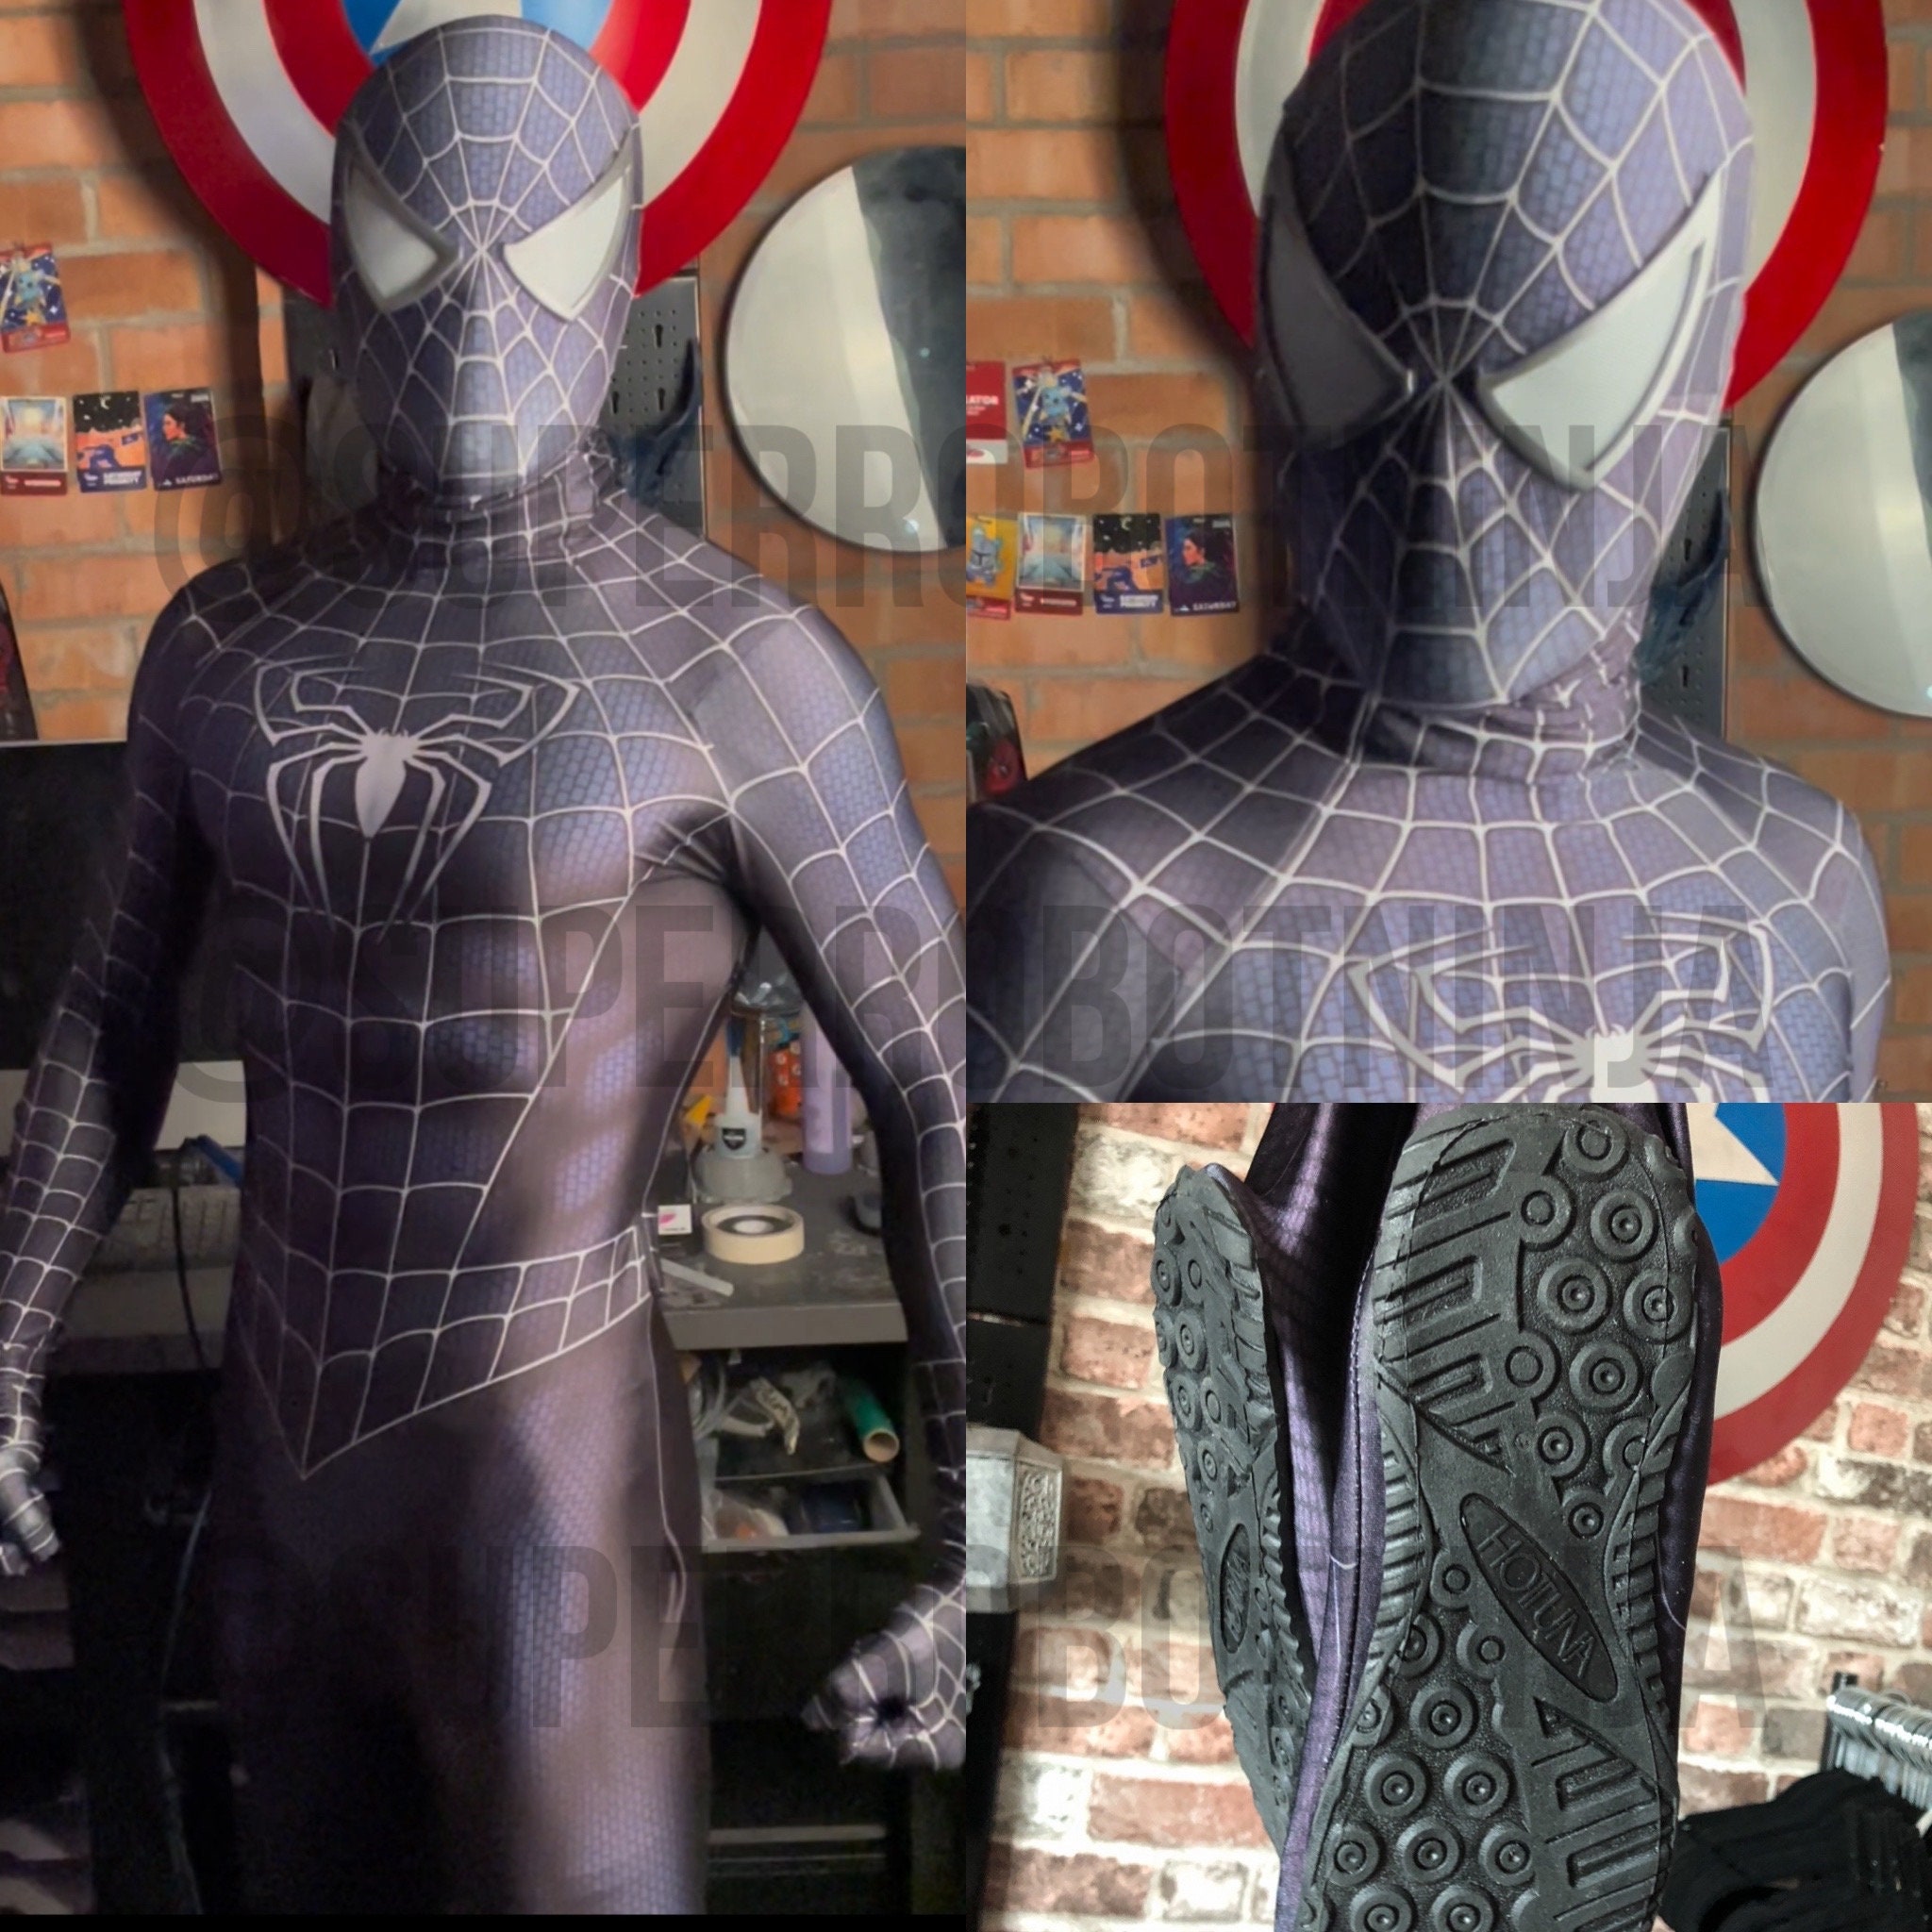 Disfraz de Spiderman con camiseta y careta para niño por 4,95 €